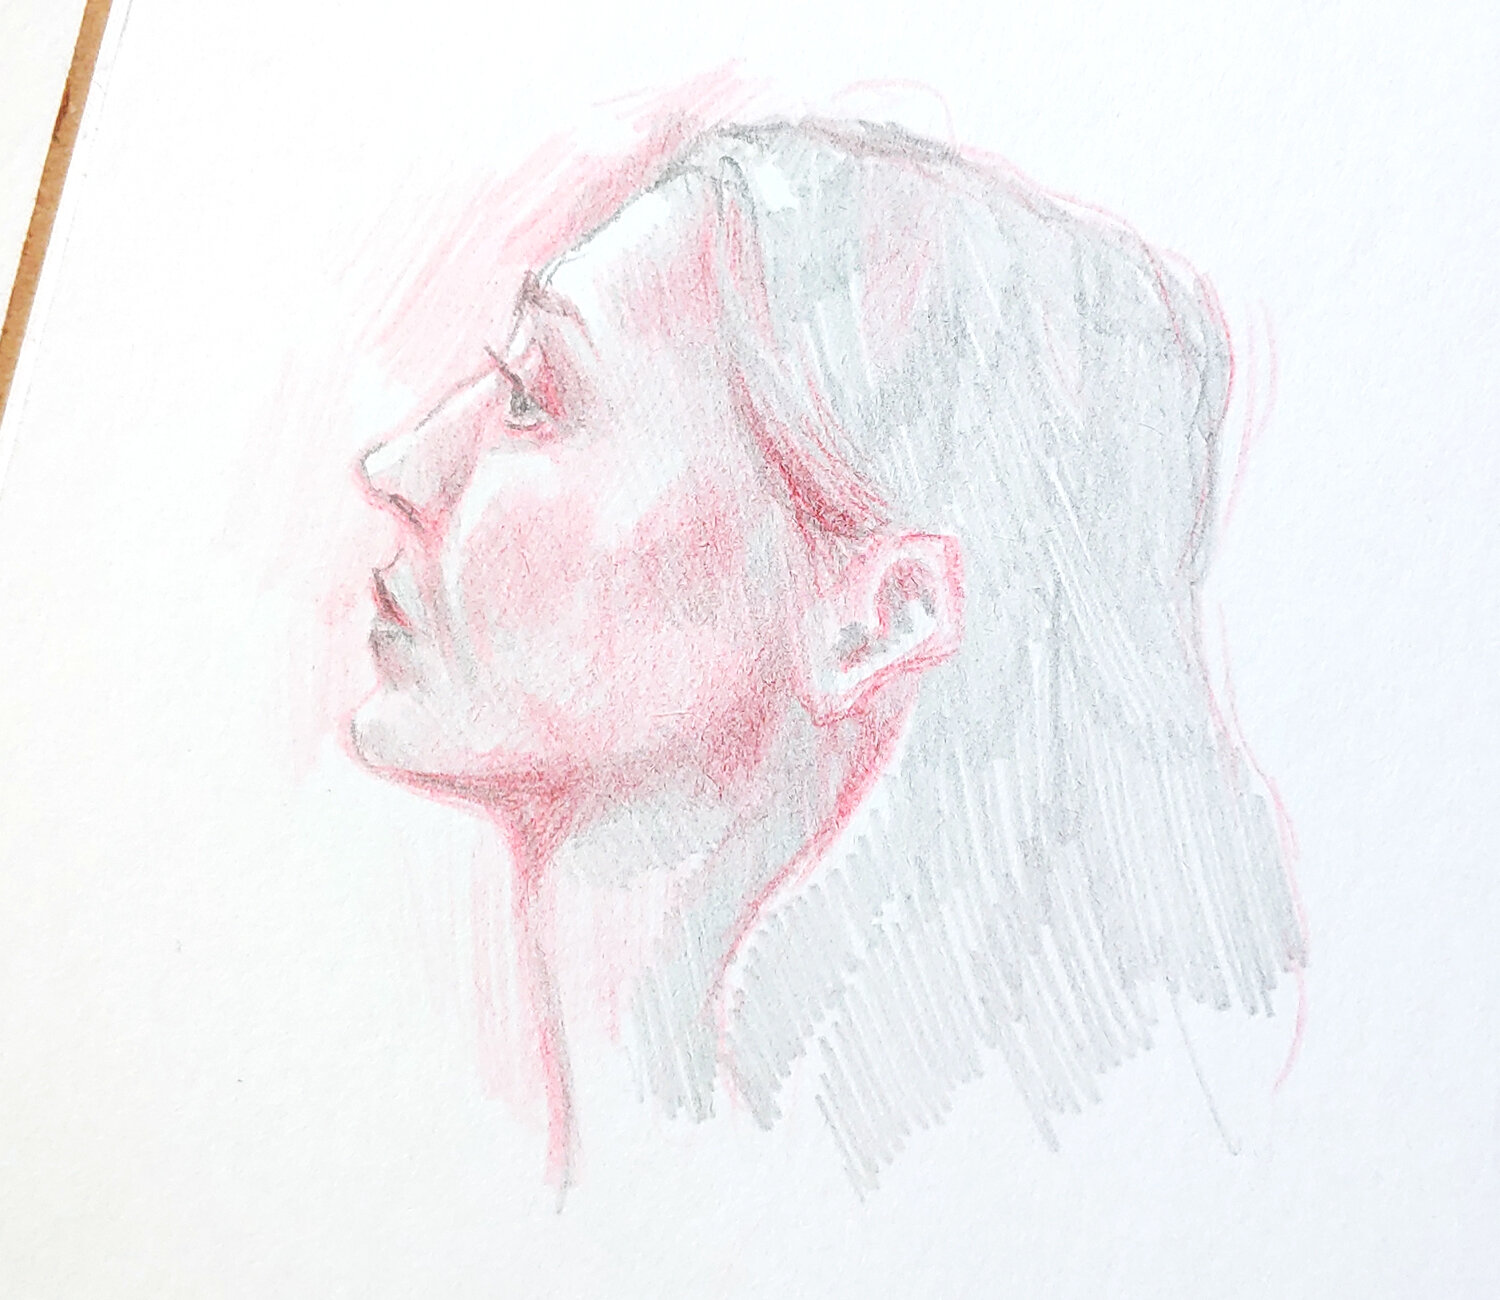 normal pencil sketch | Pencil sketch, Drawing sketches, Sketches